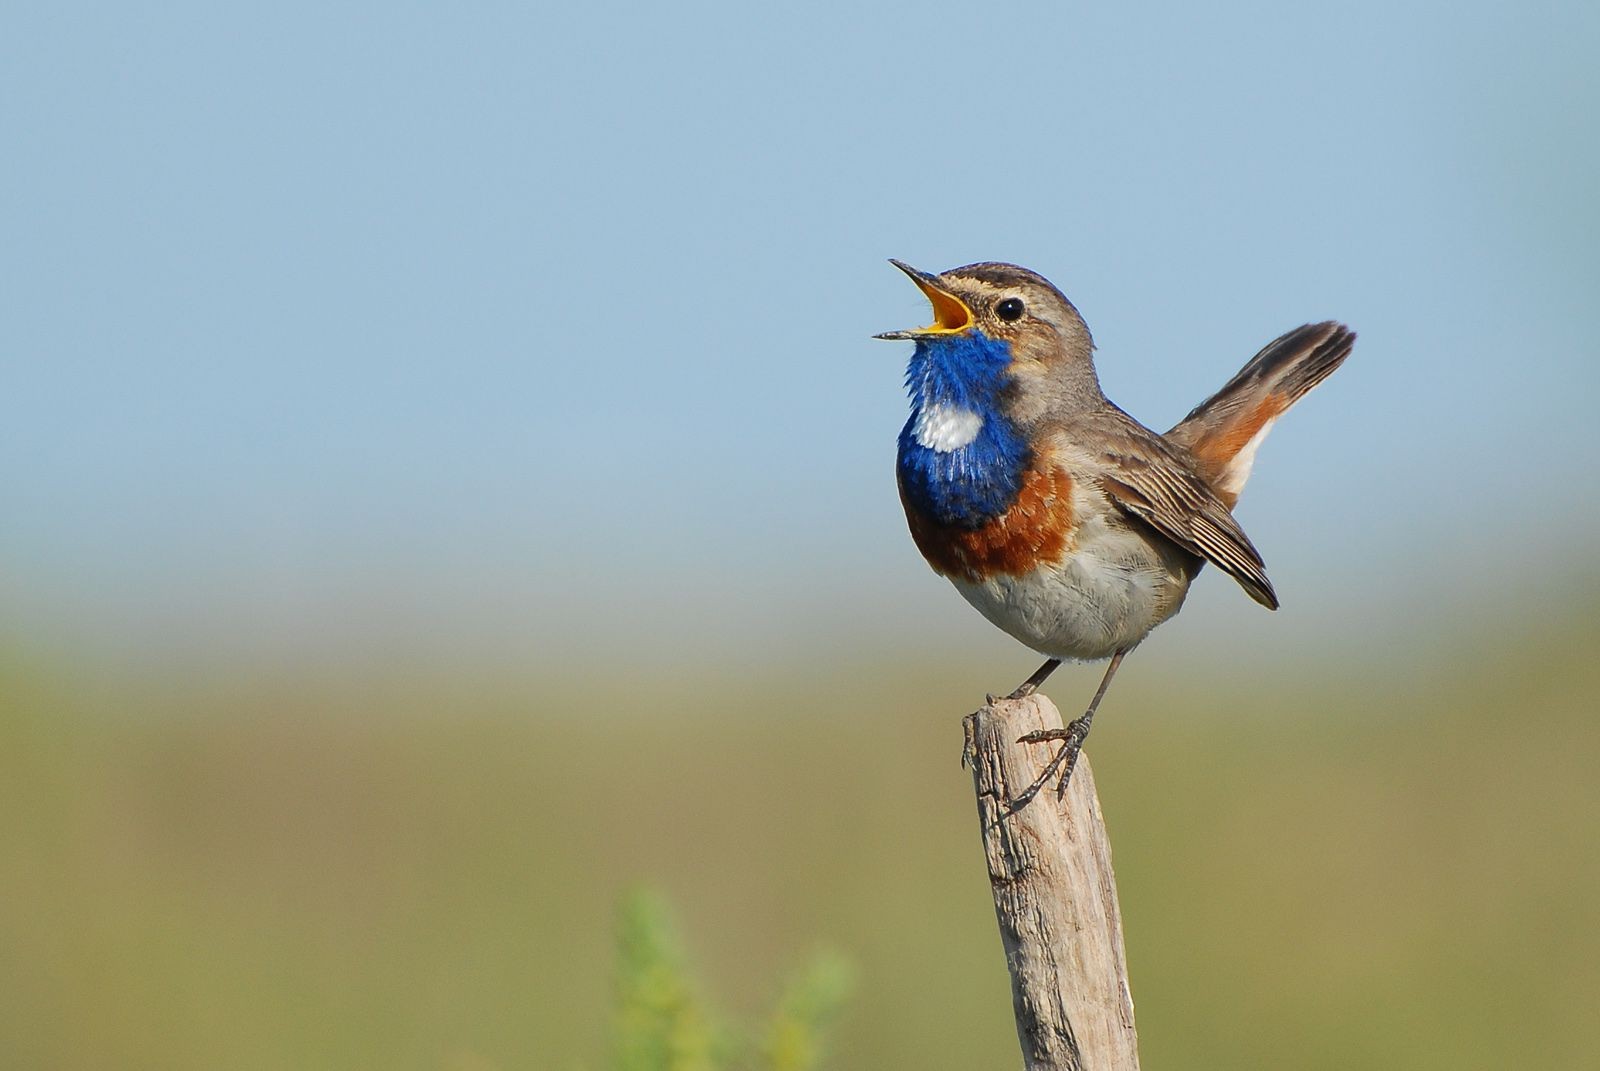 La Gorgebleue à miroir est un oiseau migrateur magnifique, facilement reconnaissable à son plastron bleu. Il est présent en bordure de la baie de l'Aiguillon dans le Marais poitevin